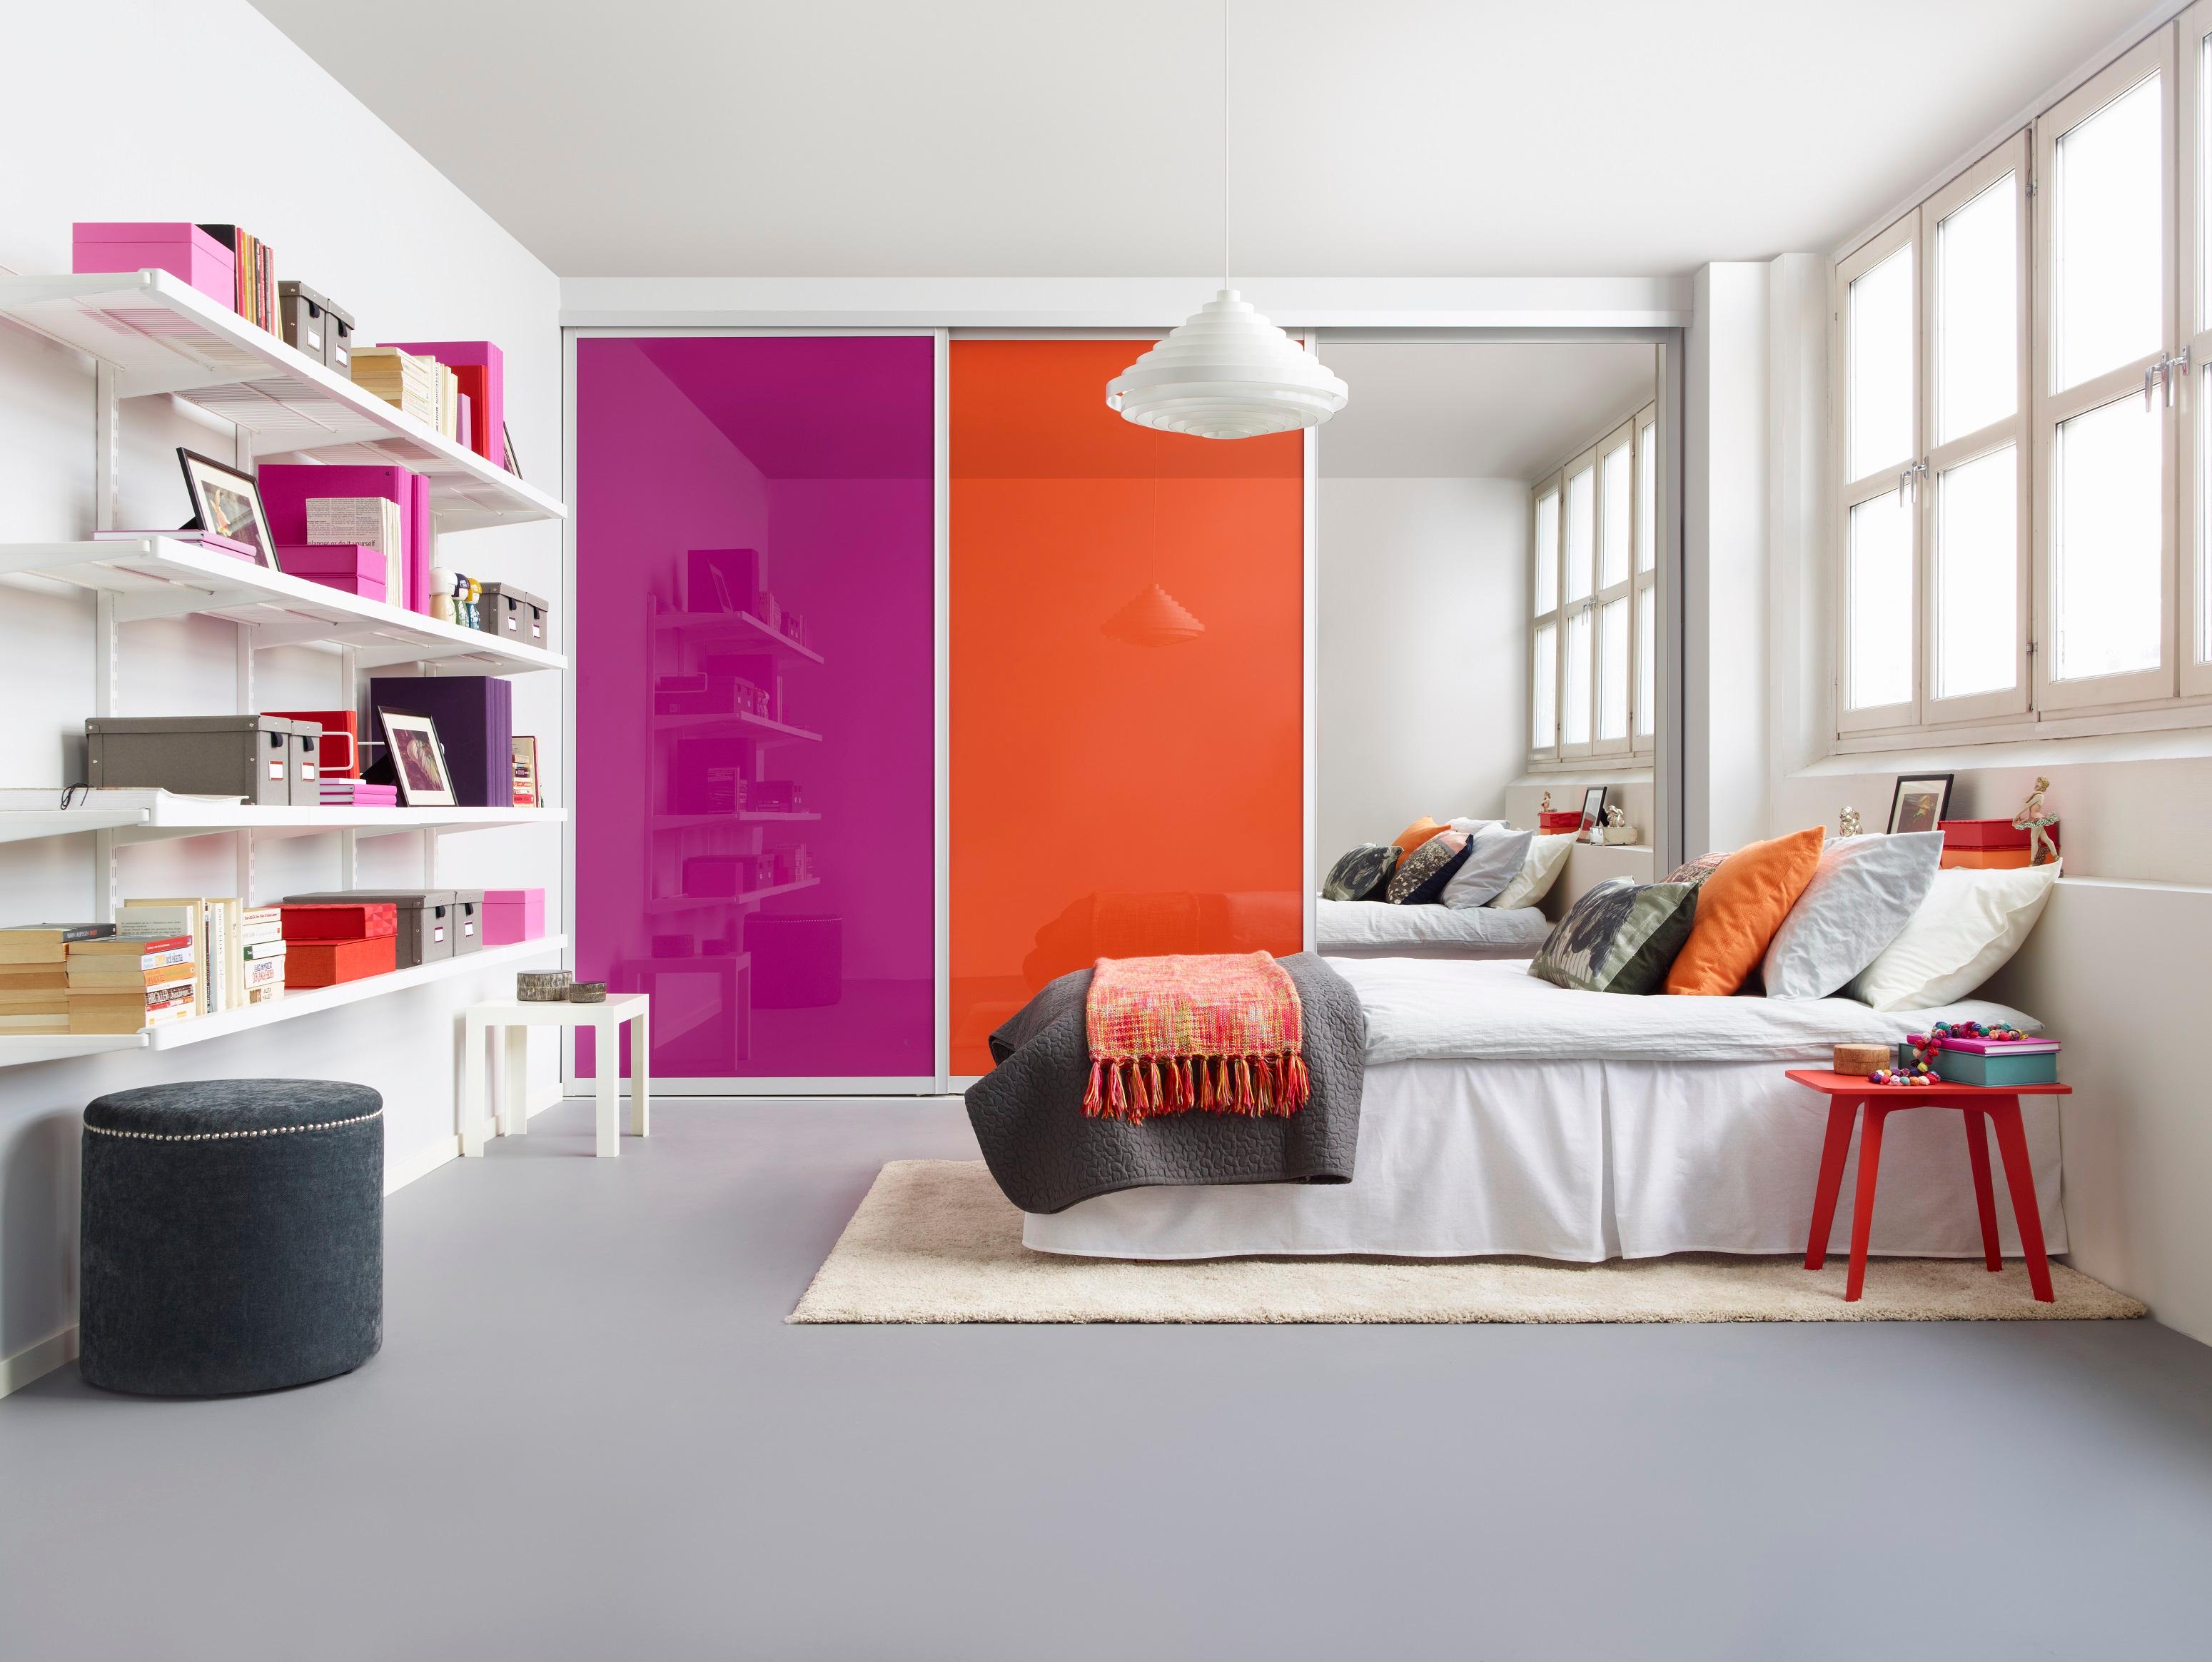 Farbenfrohes Jugendzimmer #jugendzimmer #zimmergestaltung ©Elfa International AB